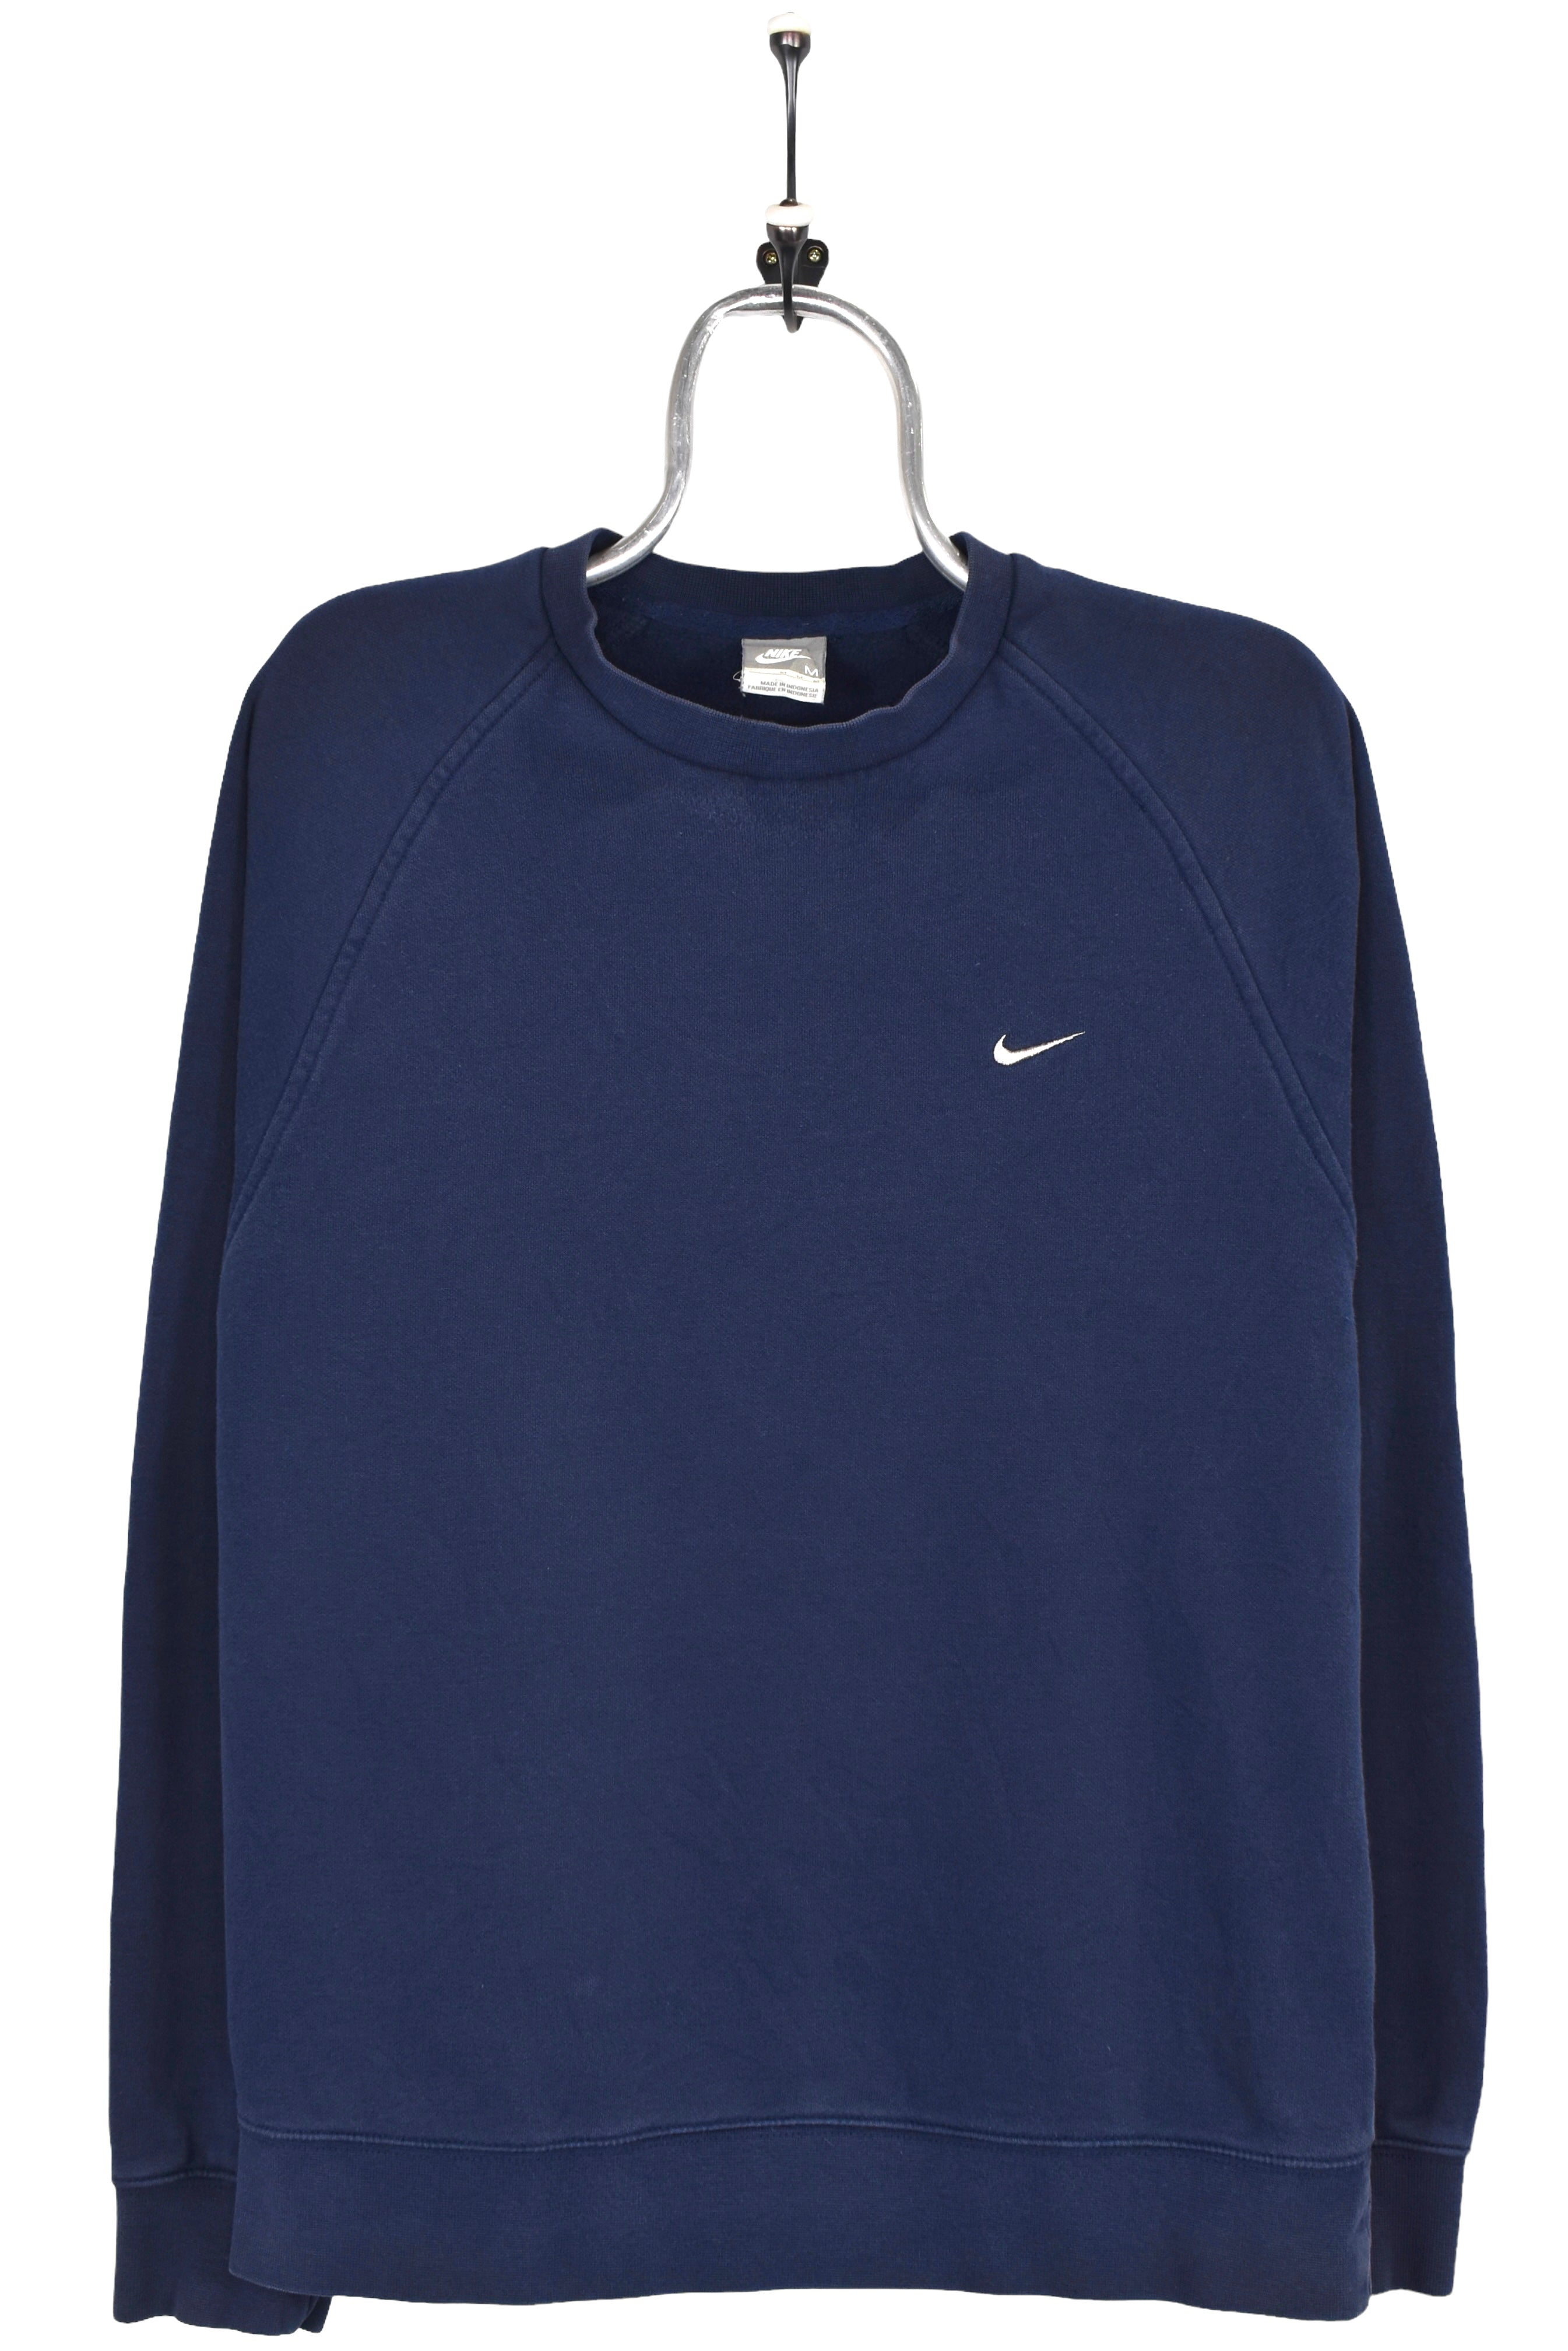 Vintage Nike sweatshirt, navy blue embroidered crewneck - Medium